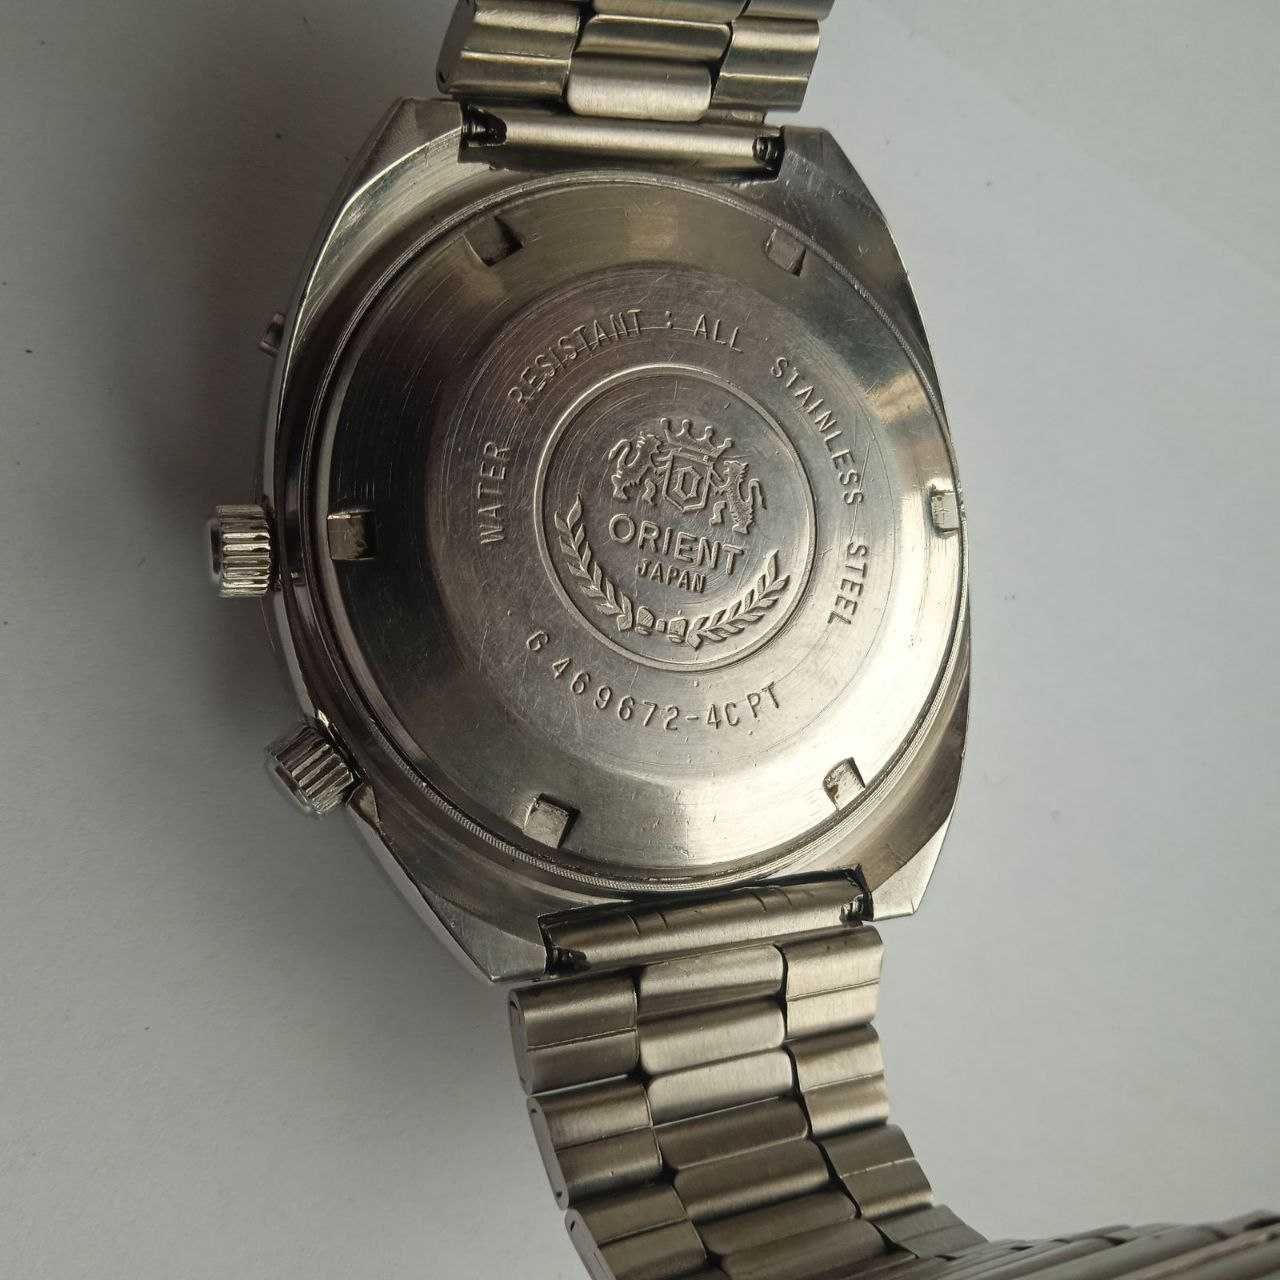 Zegarek japoński Orient Cebula [bardzo rzadka]